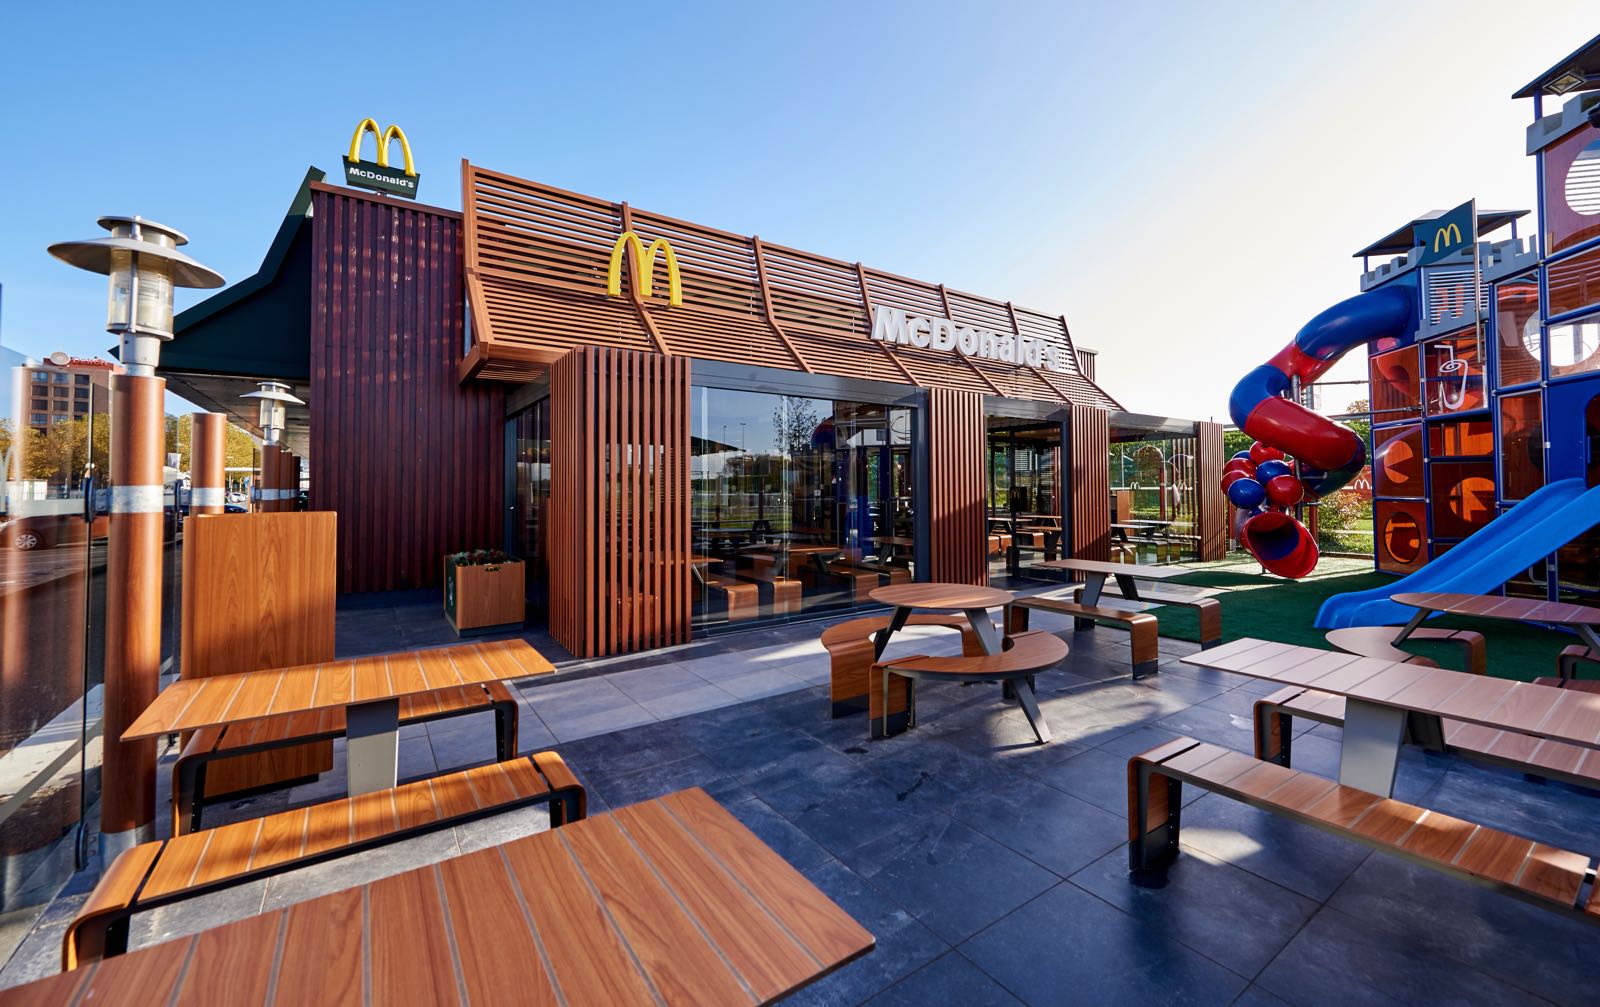 Varken Couscous Fobie Maak je kinderdromen waar: originele McDonald's-speeltuin te koop op  Marktplaats!